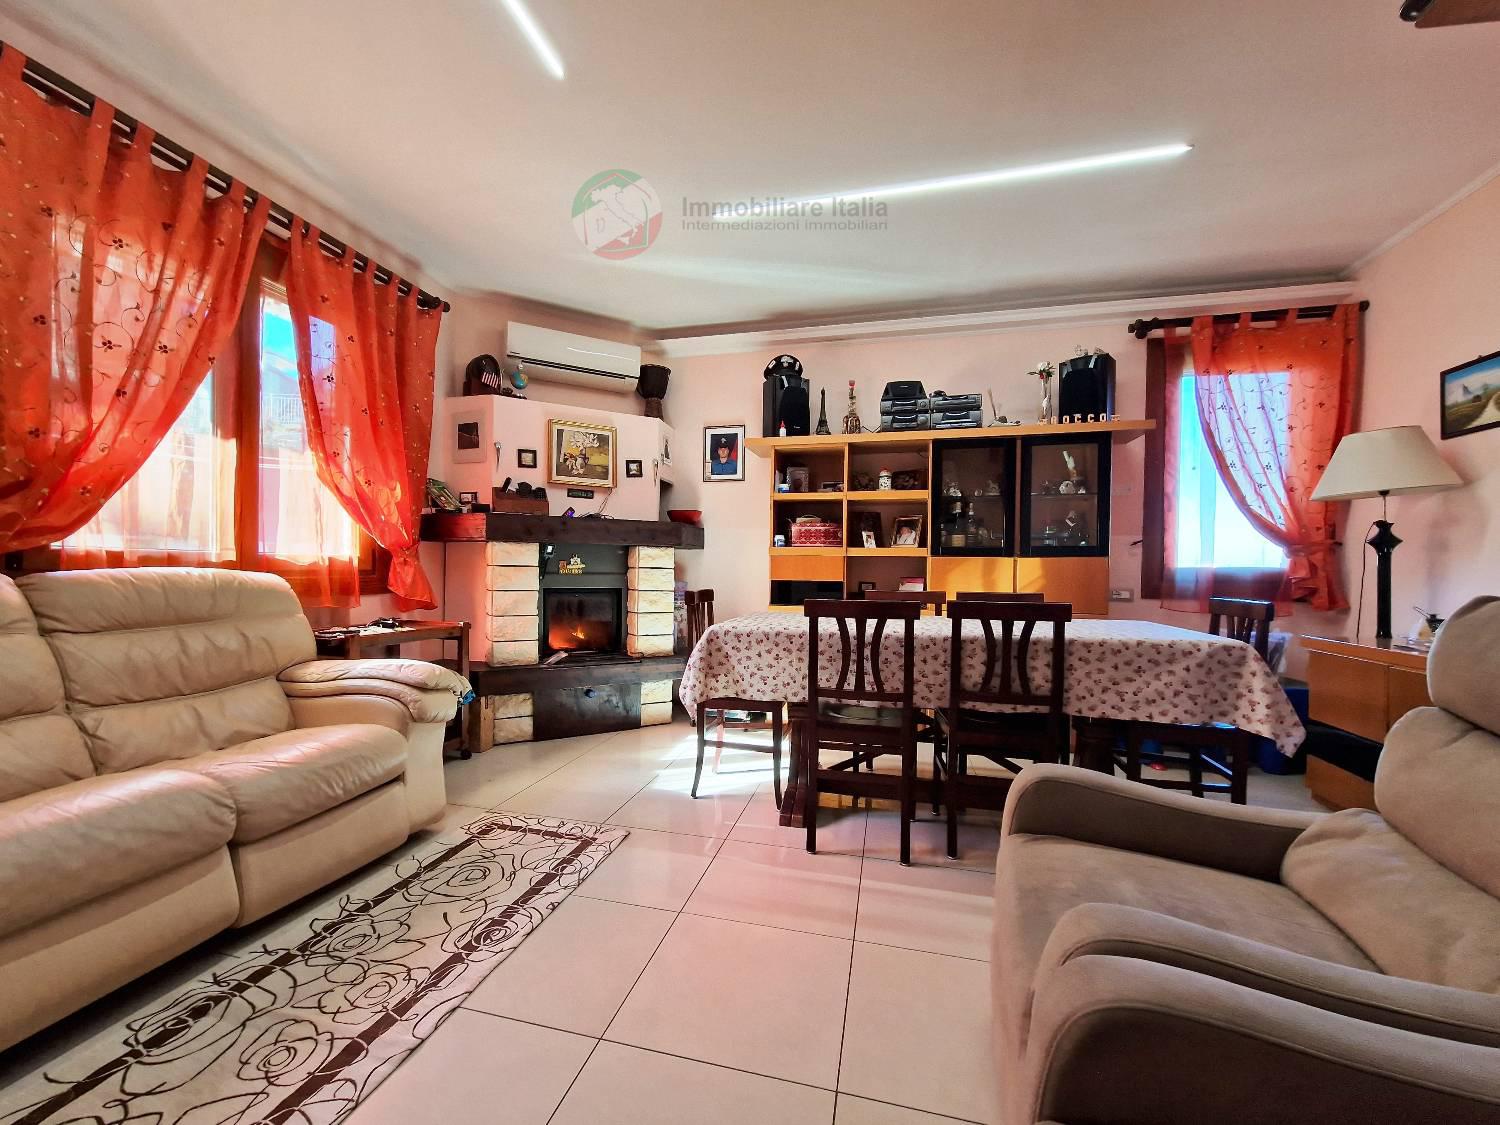 Appartamento in vendita a Saludecio, 5 locali, prezzo € 165.000 | PortaleAgenzieImmobiliari.it